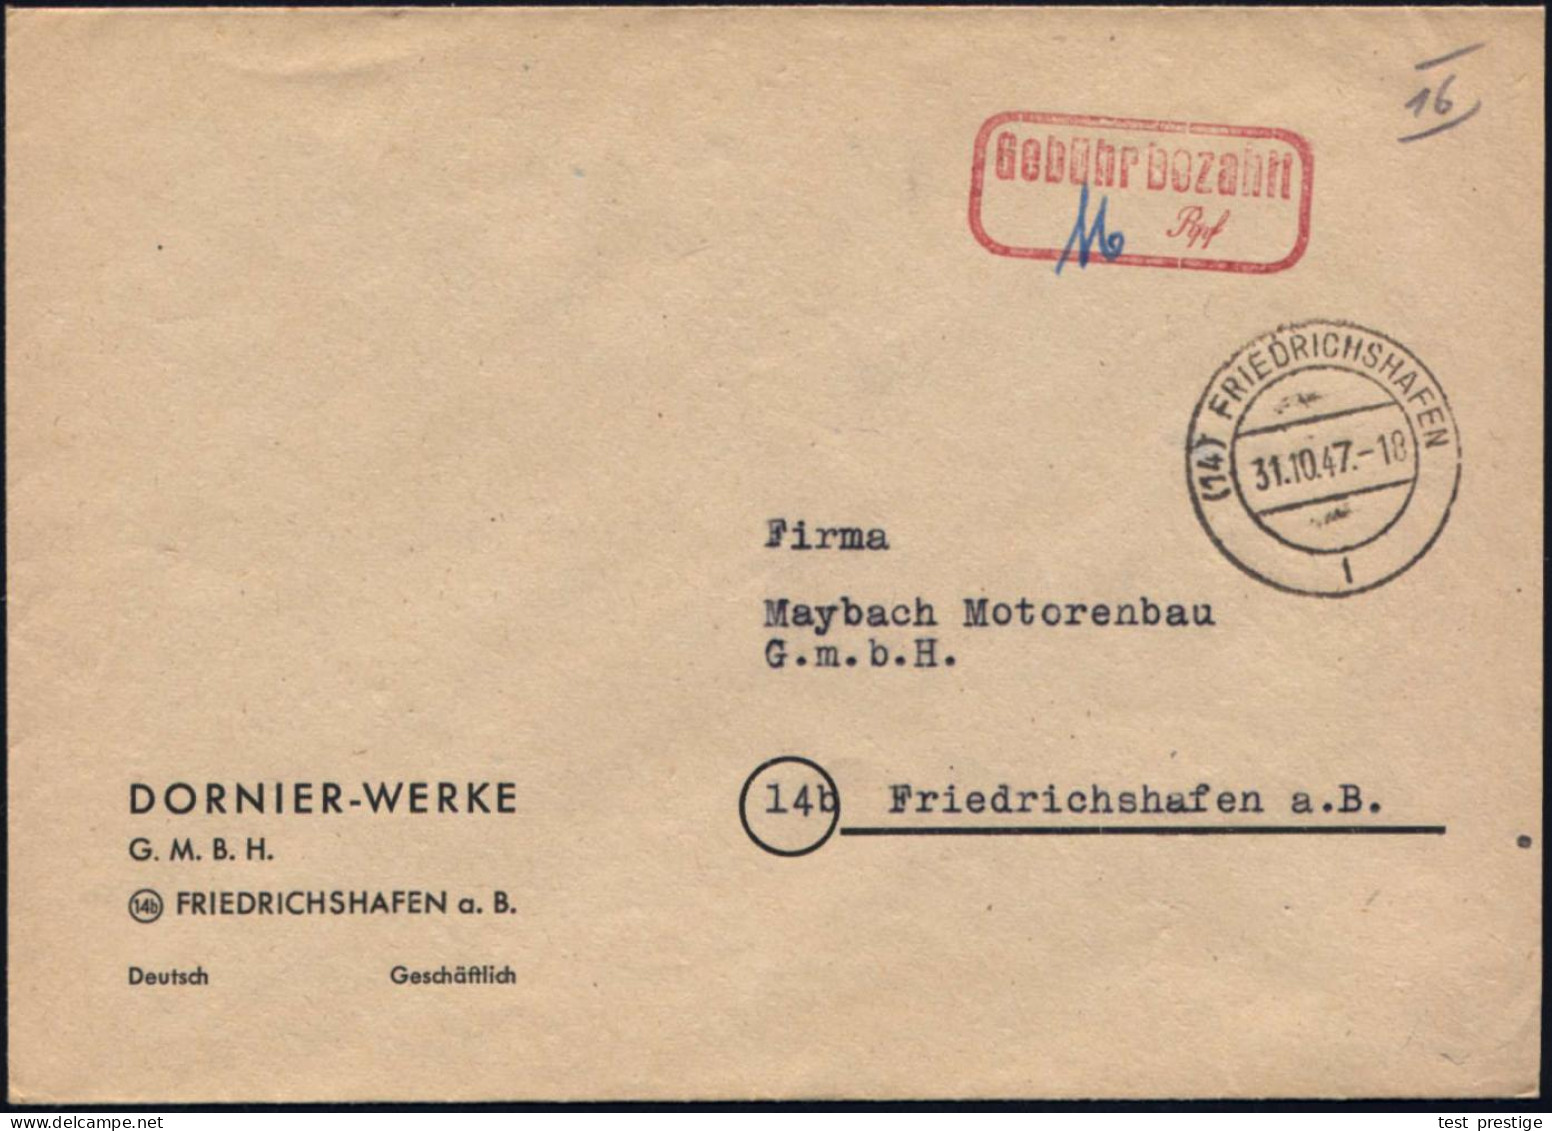 (14) FRIEDRICHSHAFEN/ L 1947 (31.10.) 2K-Steg + Roter Ra2: Gebühr Bezahlt/...Rpf Auf Firmen-Bf: DORNIER-WERKE GMBH + Hs. - Airplanes